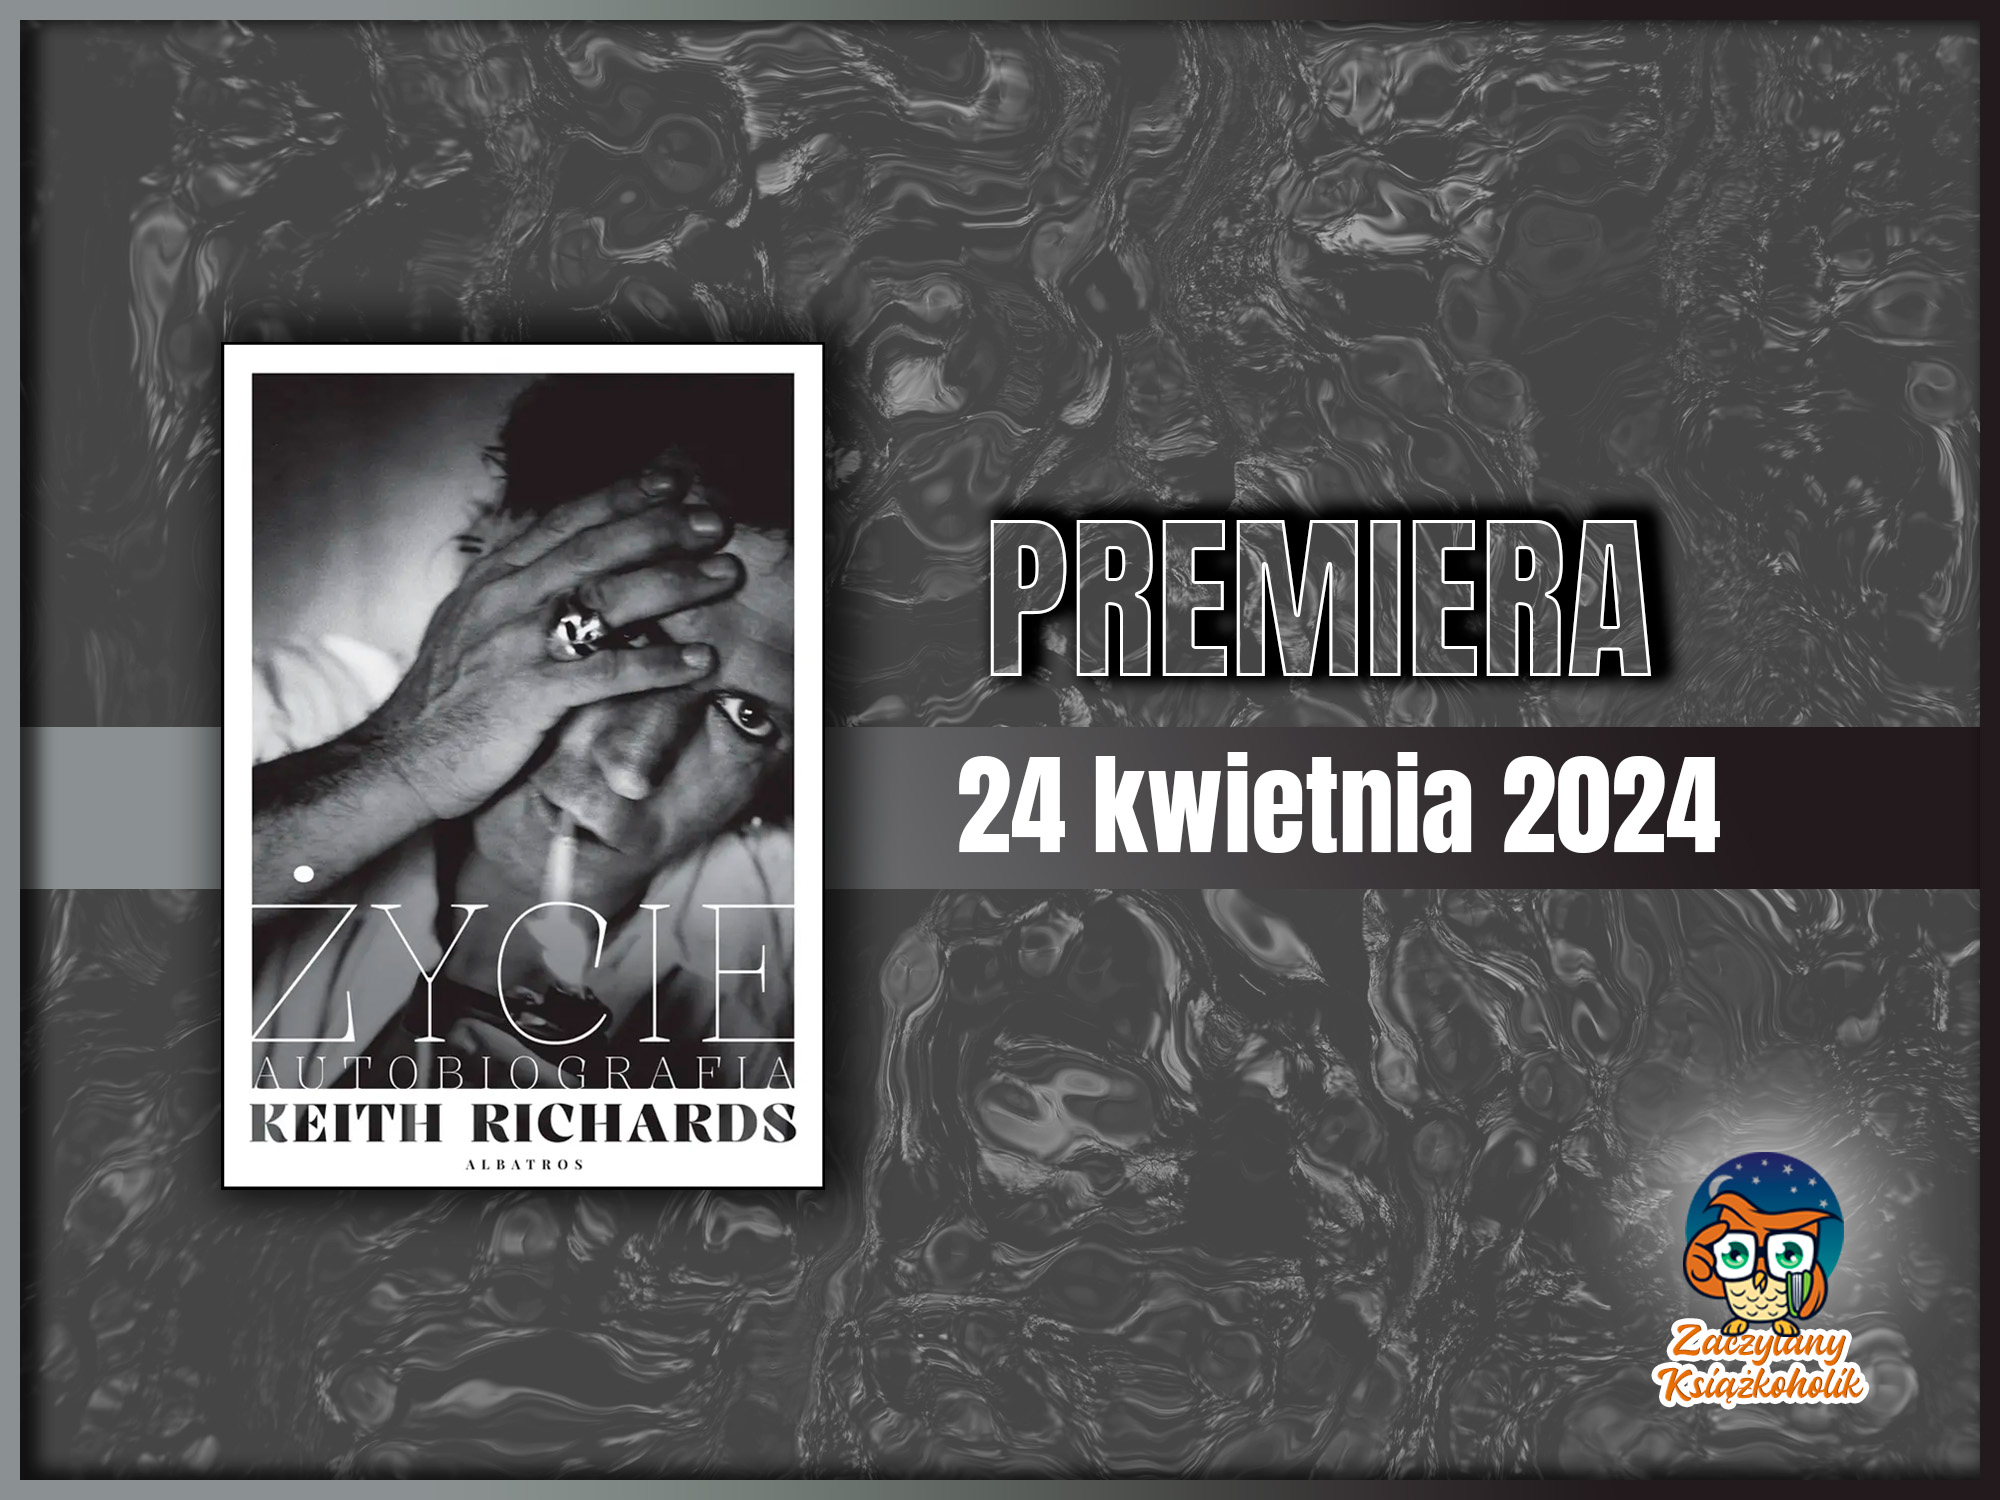 Życie. Autobiografi -Keith Richards - zaczytanyksiazkoholik.pl